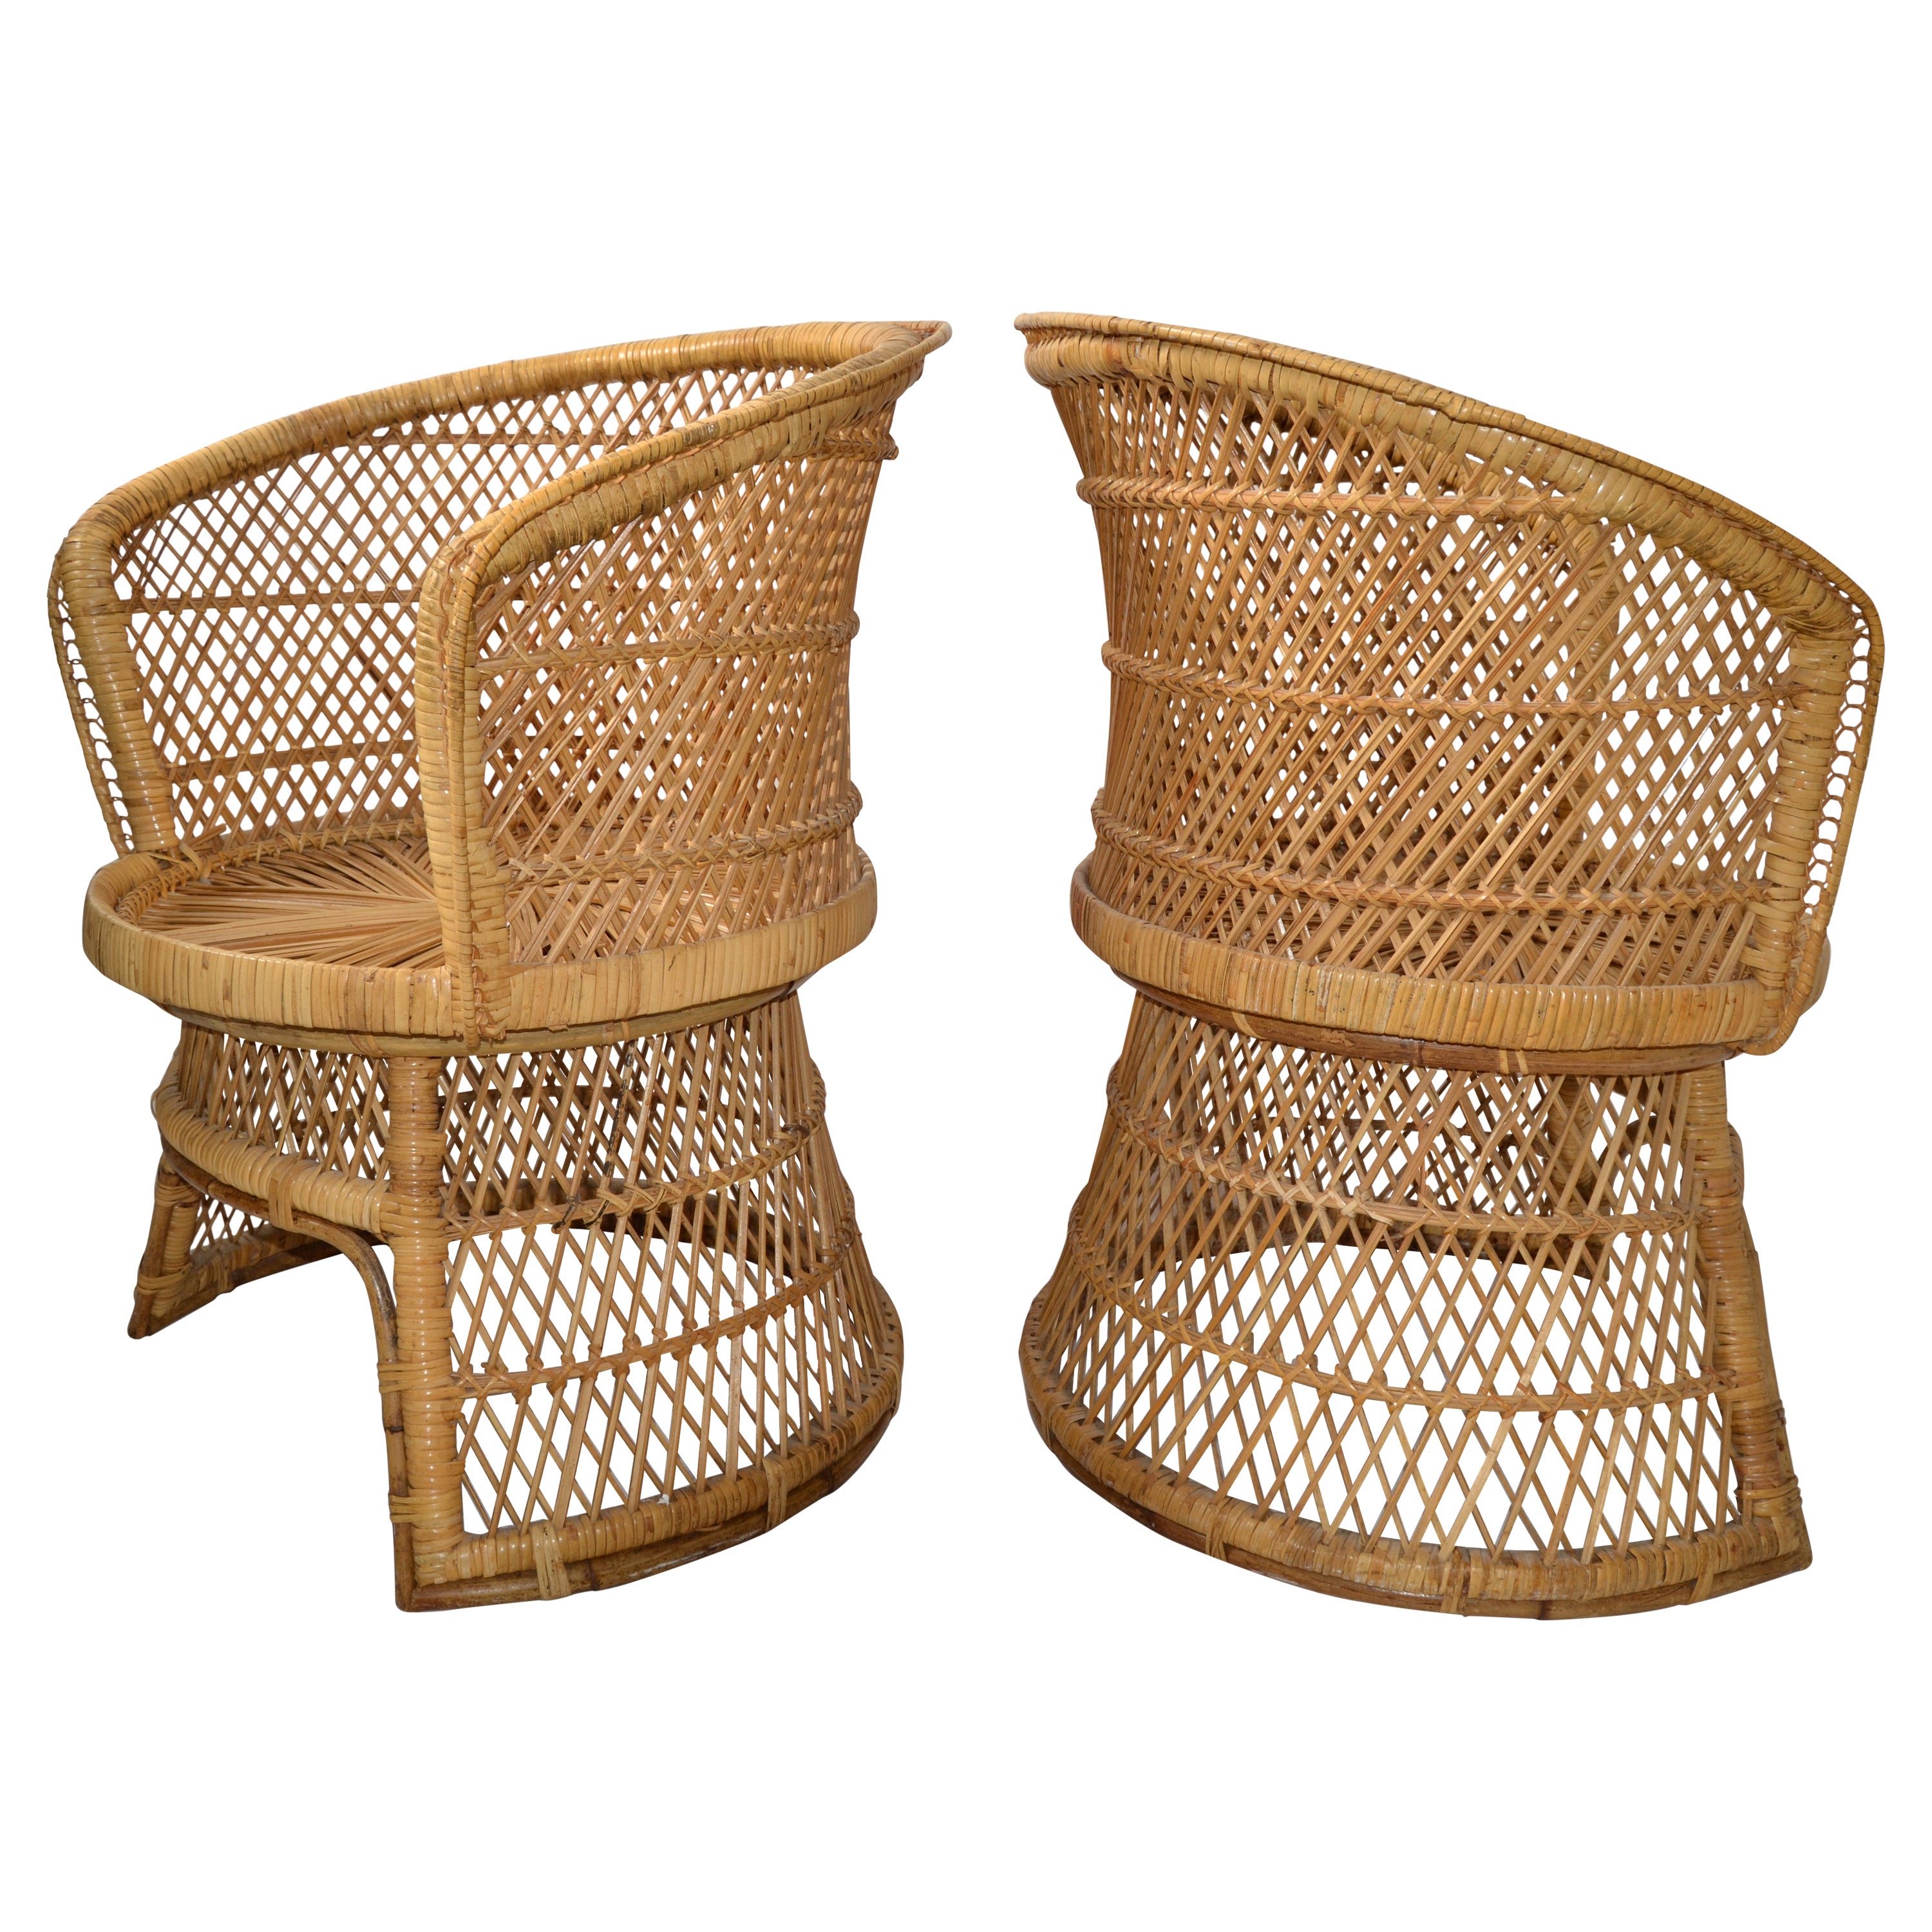 Ensemble de 2 fauteuils vintage en rotin et bambou de style chinoiserie tissés et fabriqués à la main en vente